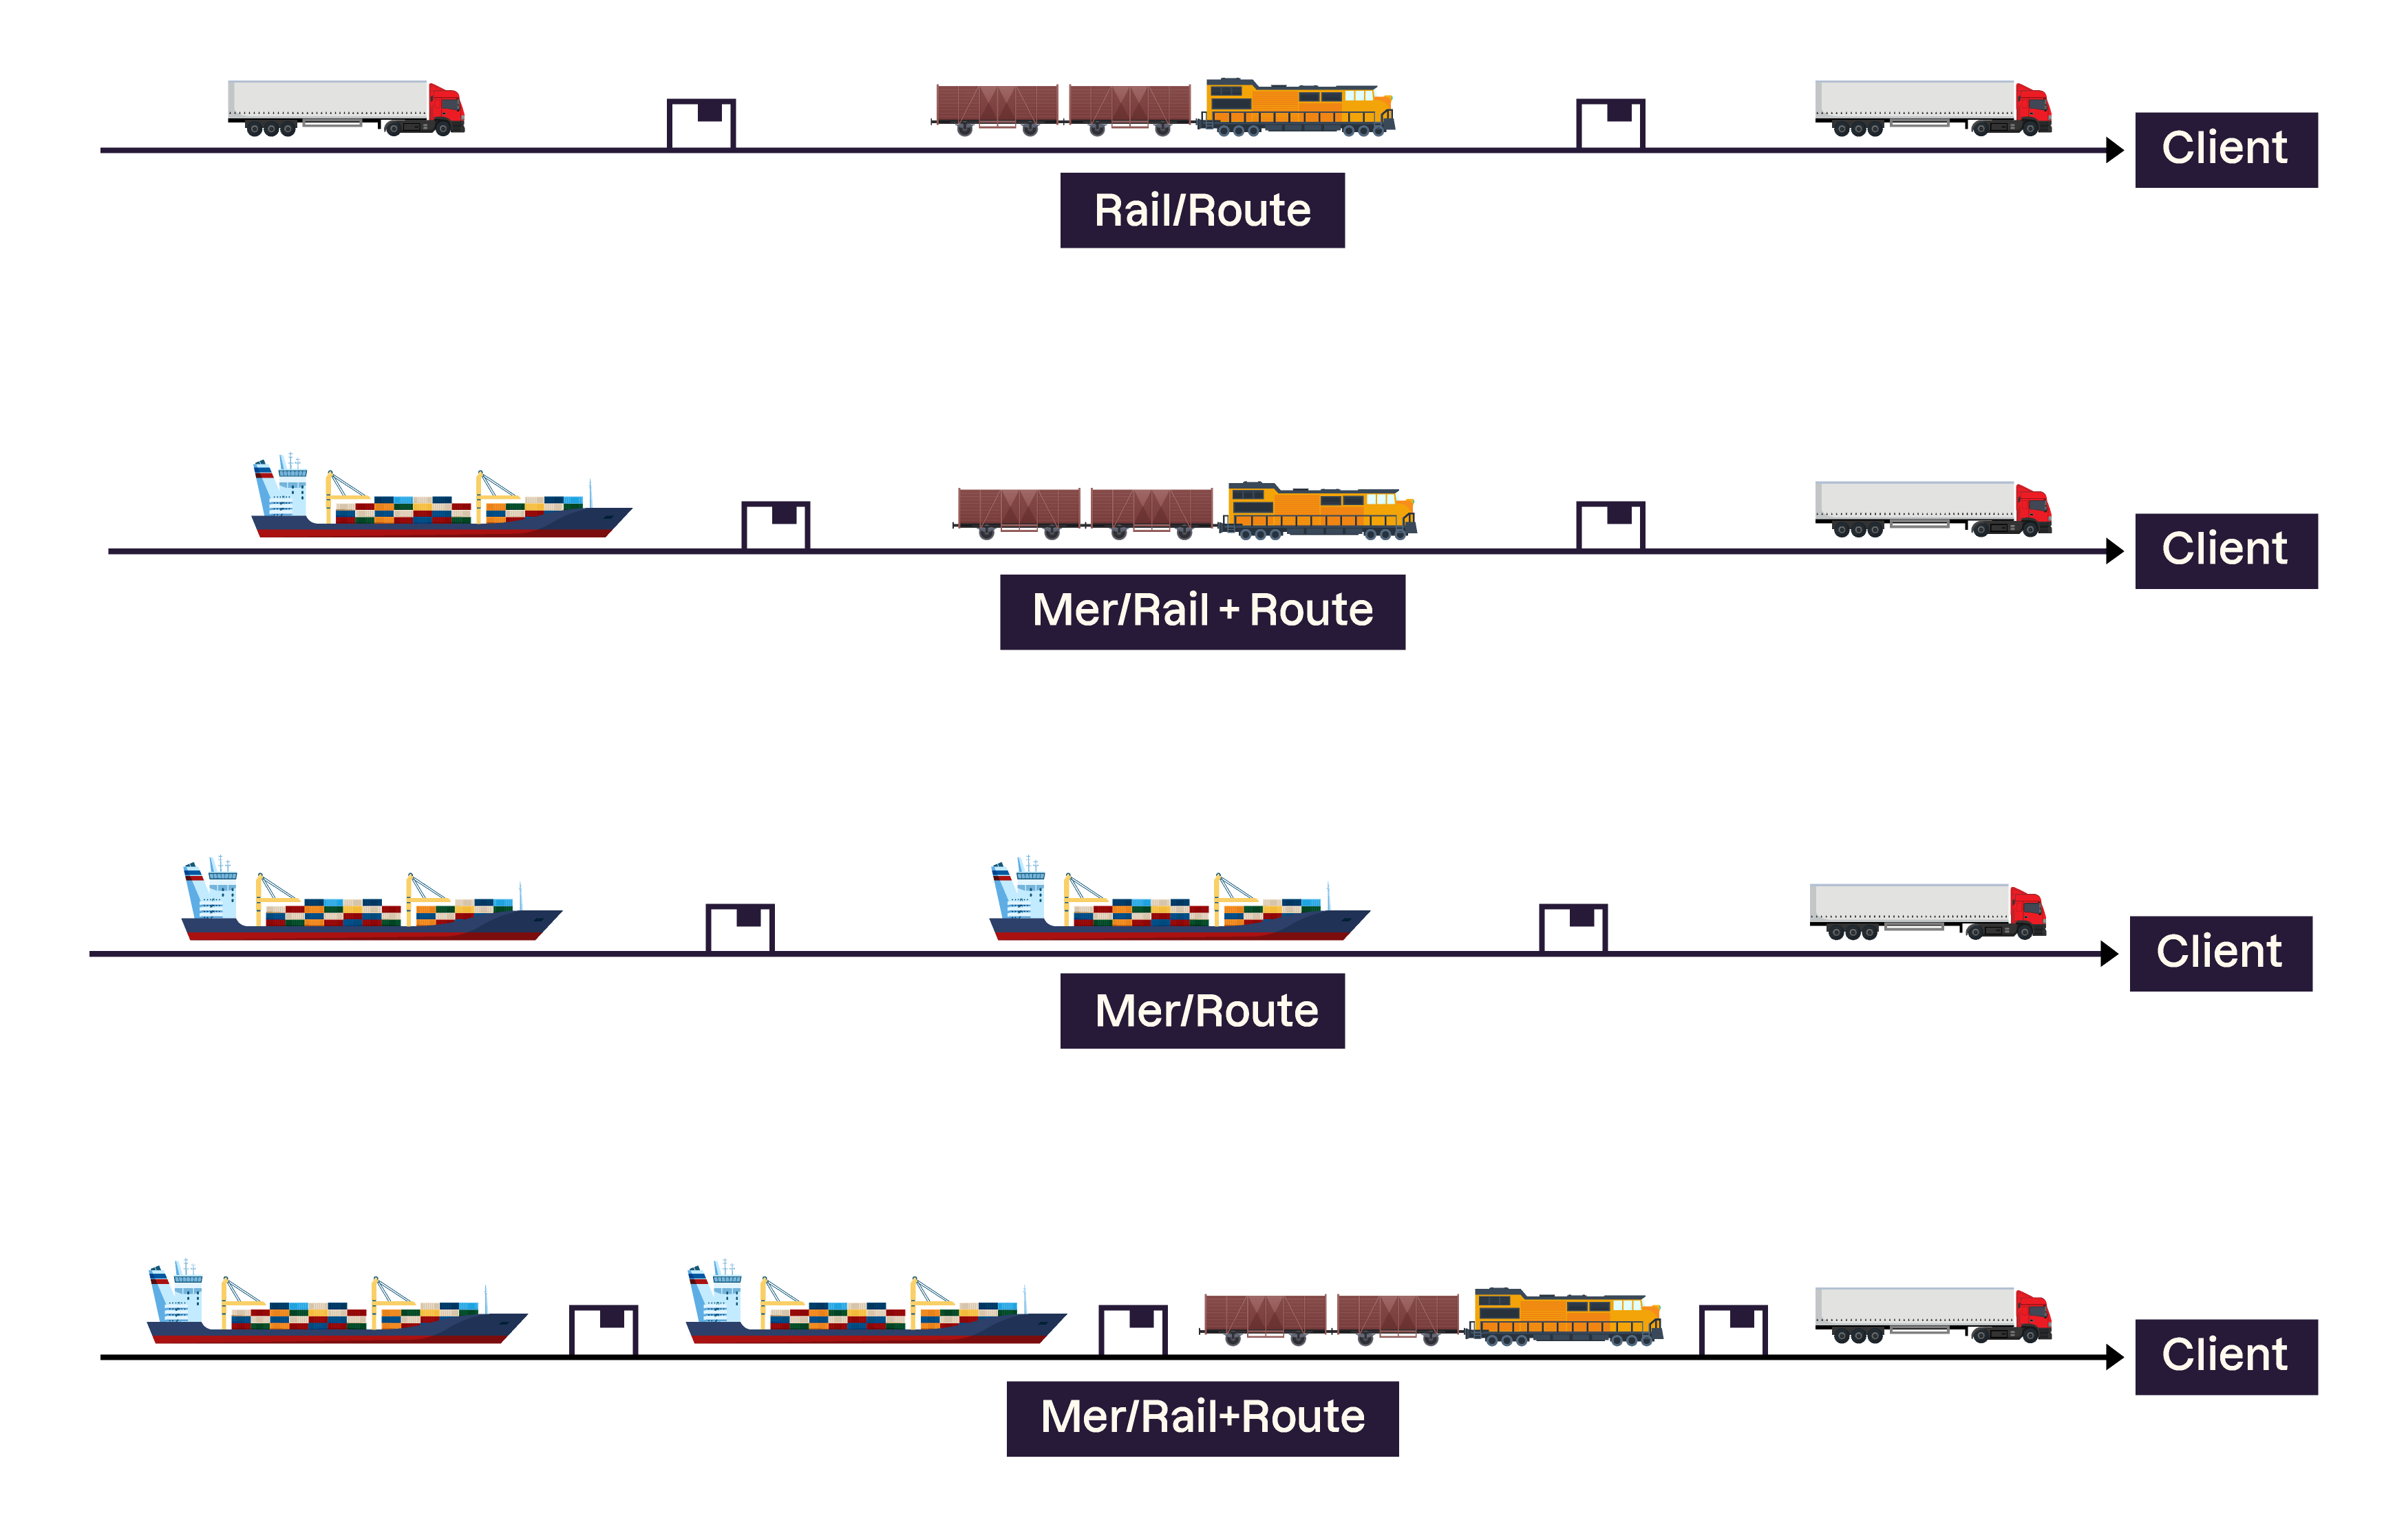 Il existe différentes combinaisons de modes de transport : rail et route, mer/rail et route, mer/route, mer/rail et route.